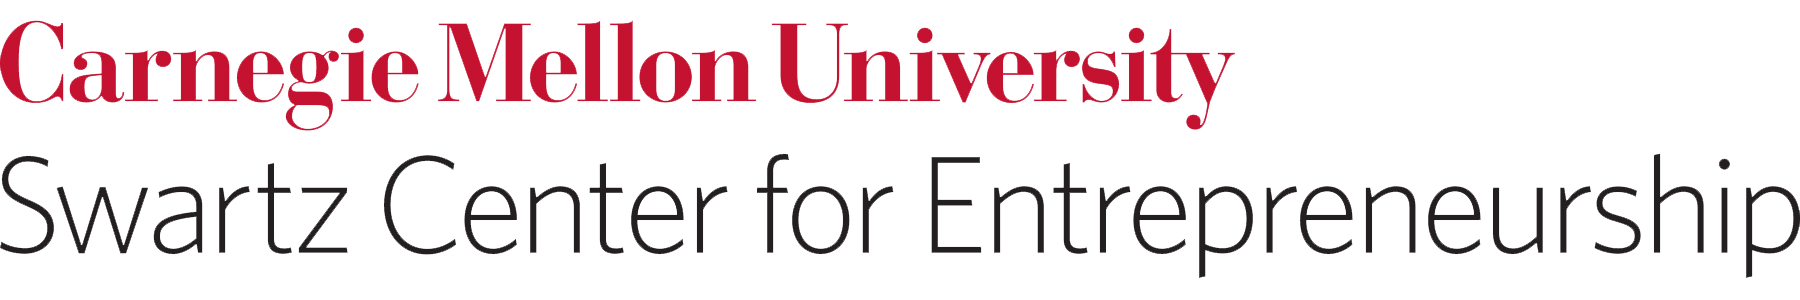 CMU Swartz Center for Entrepreneurship logo